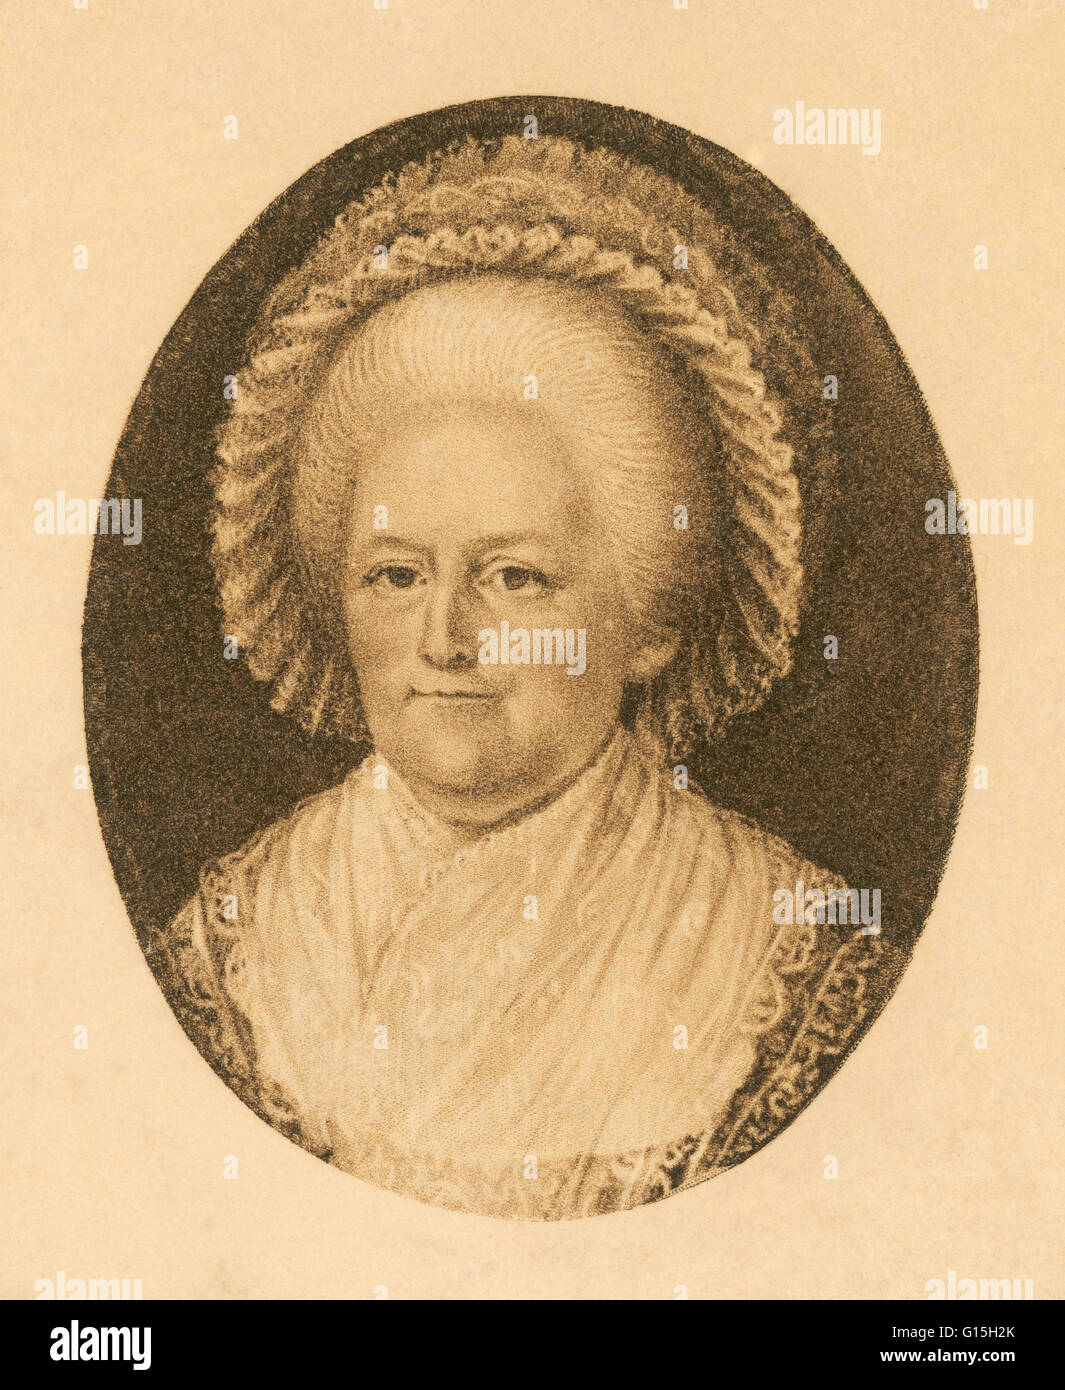 Martha Dandridge Custis Washington (1731-1802) war die Ehefrau von George Washington, dem ersten Präsidenten der Vereinigten Staaten. Obwohl der Titel nicht erst nach ihrem Tod geprägt wurde, Martha Washington gilt die erste First Lady der Vereinigten S Stockfoto